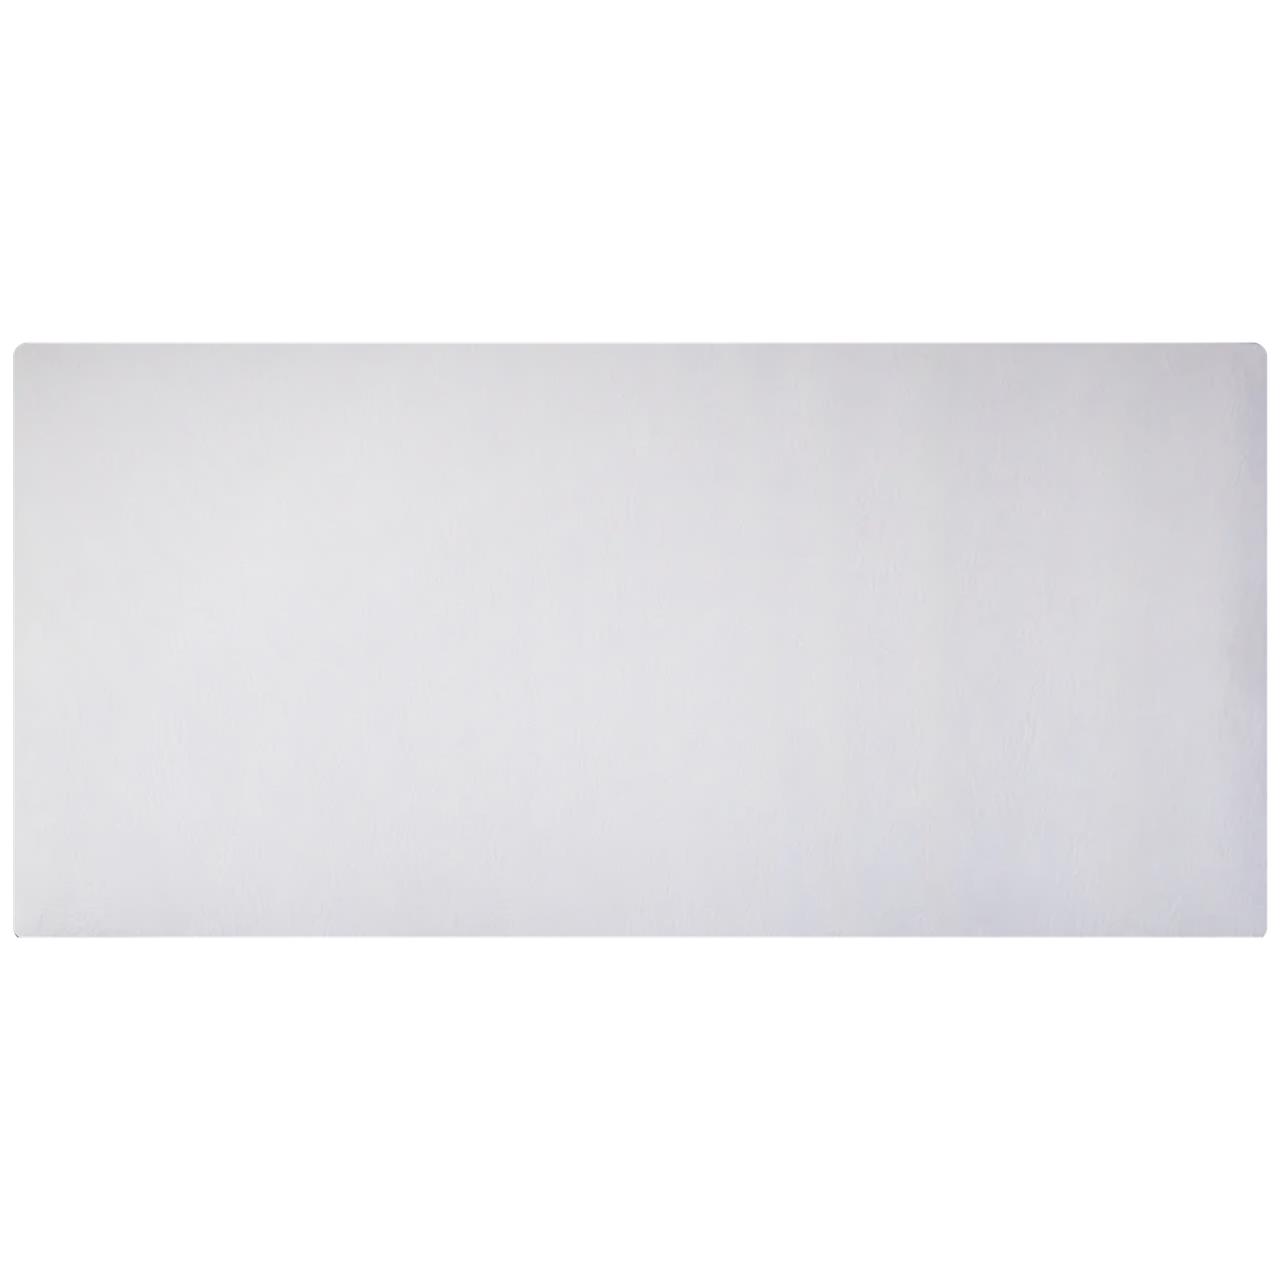 Панельный обогреватель Uden-S KEN-600 Изморозь жаккард кварцевый (2728KM6GAiz813) в интернет-магазине, главное фото